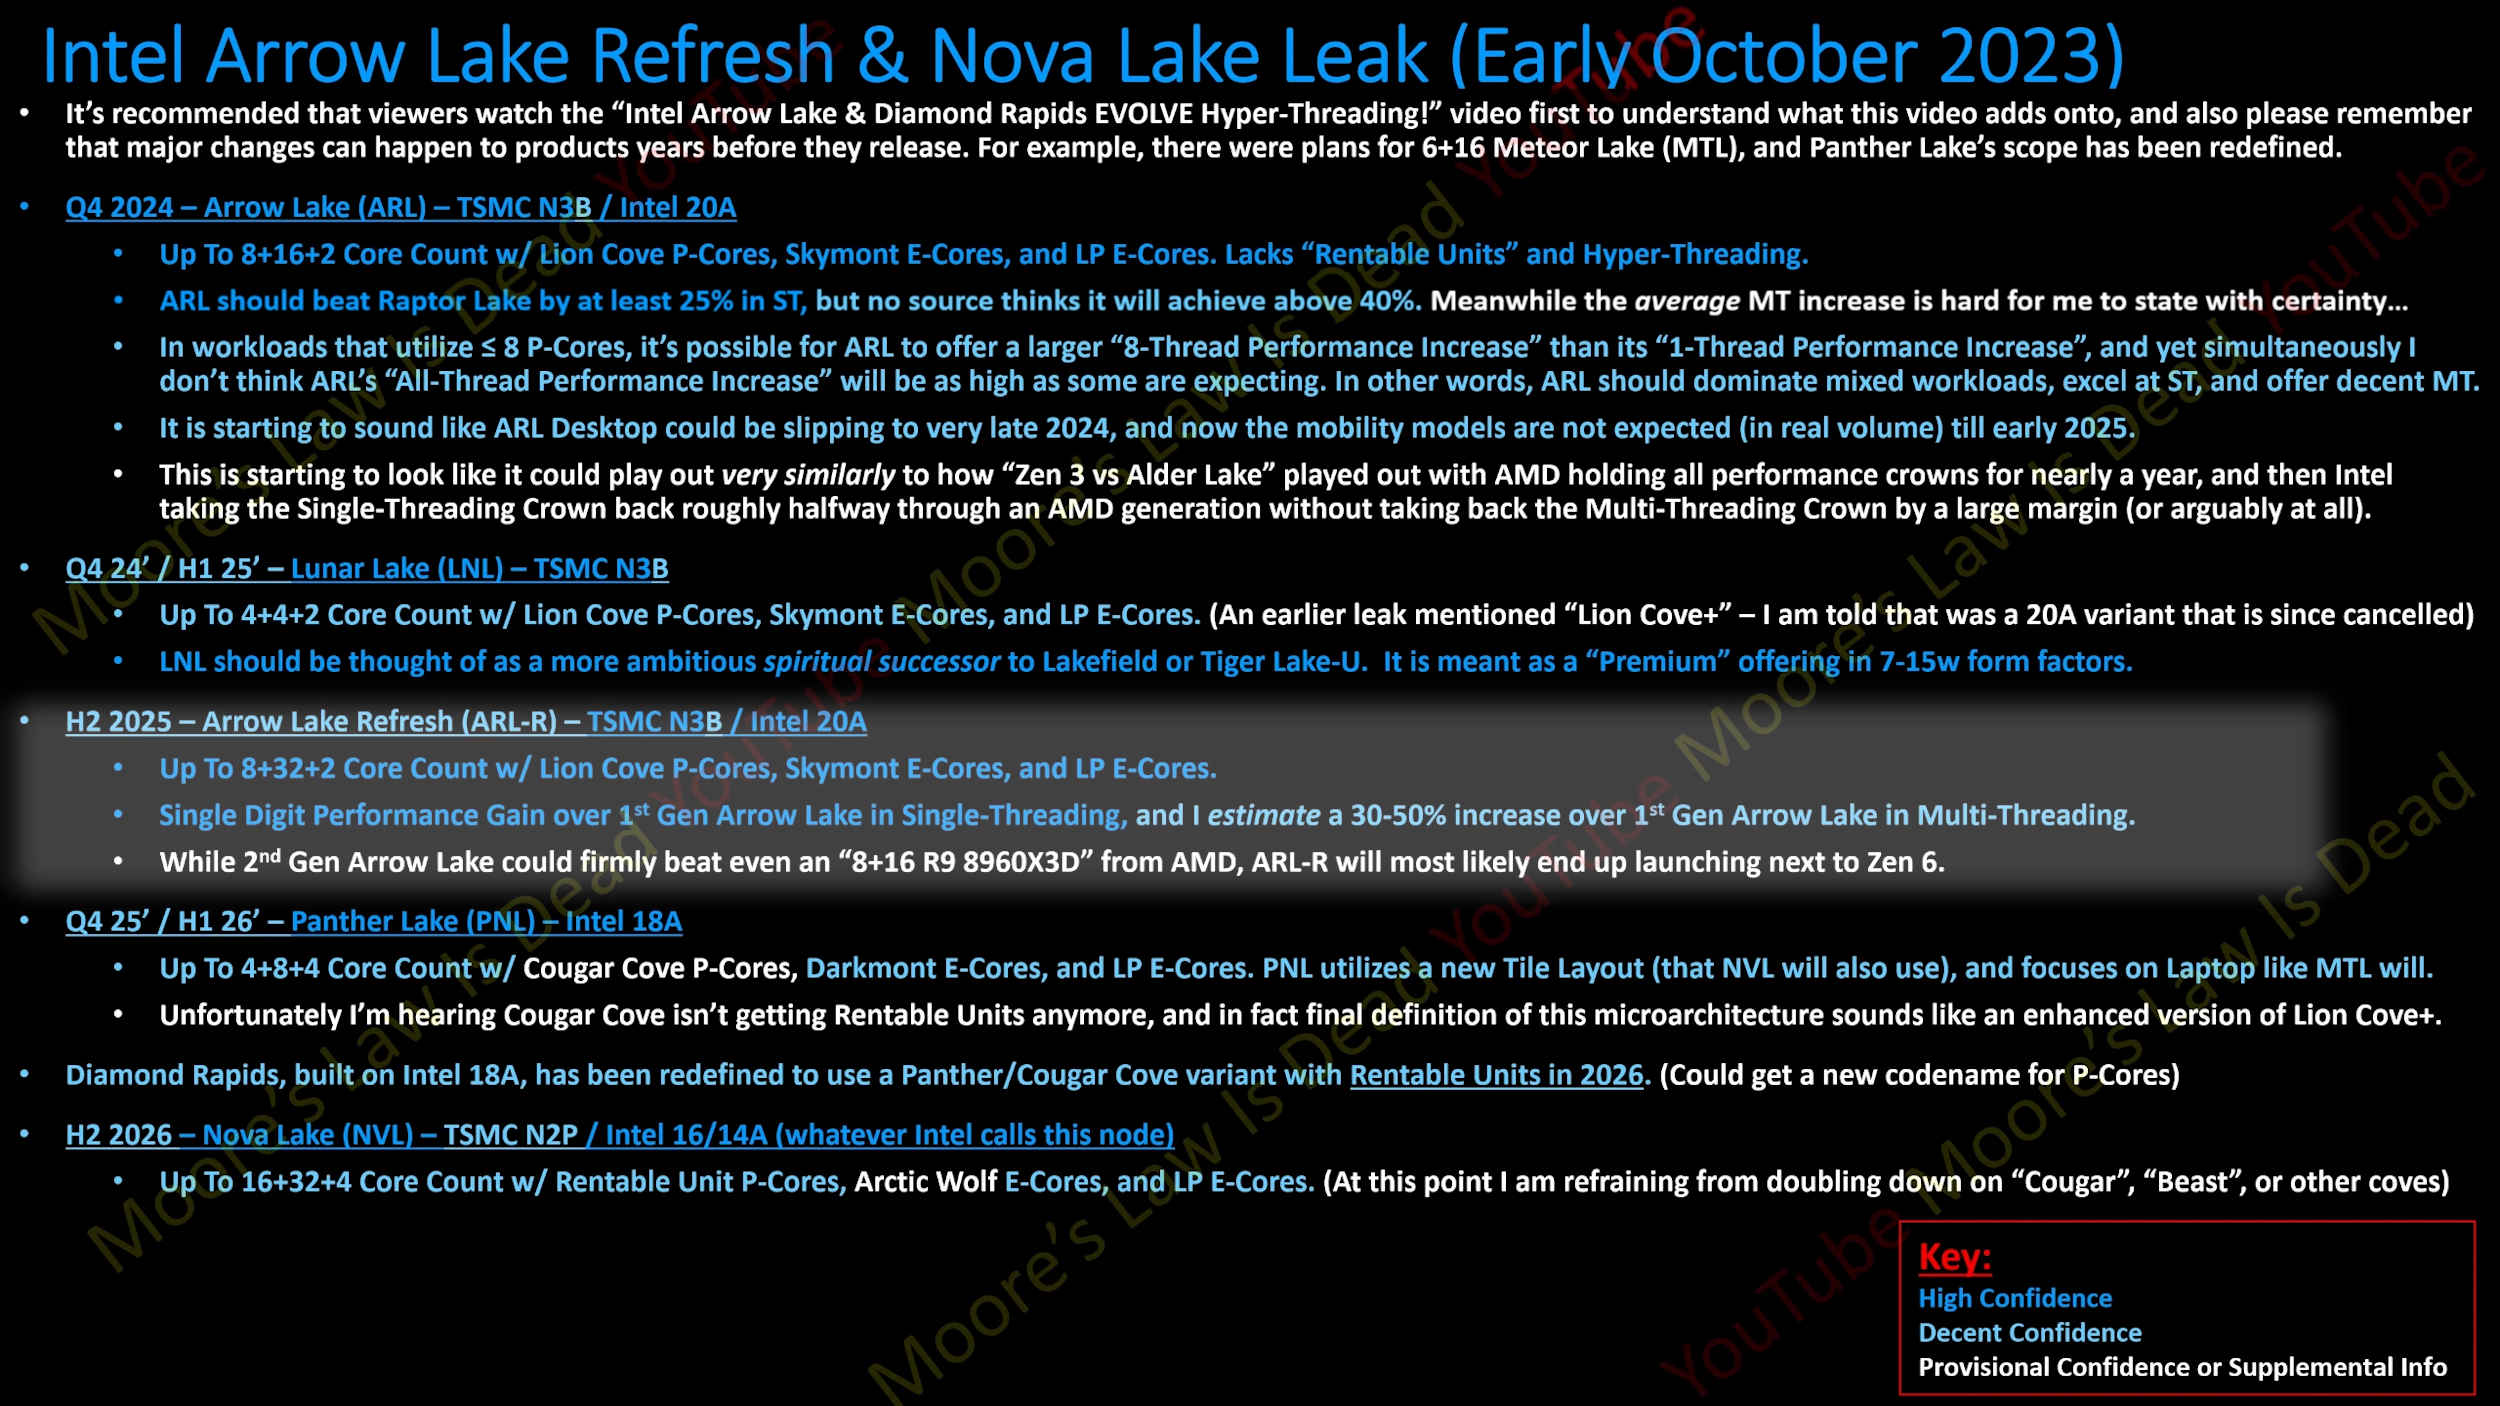 Arrow-Lake-Refresh-rumors.jpg